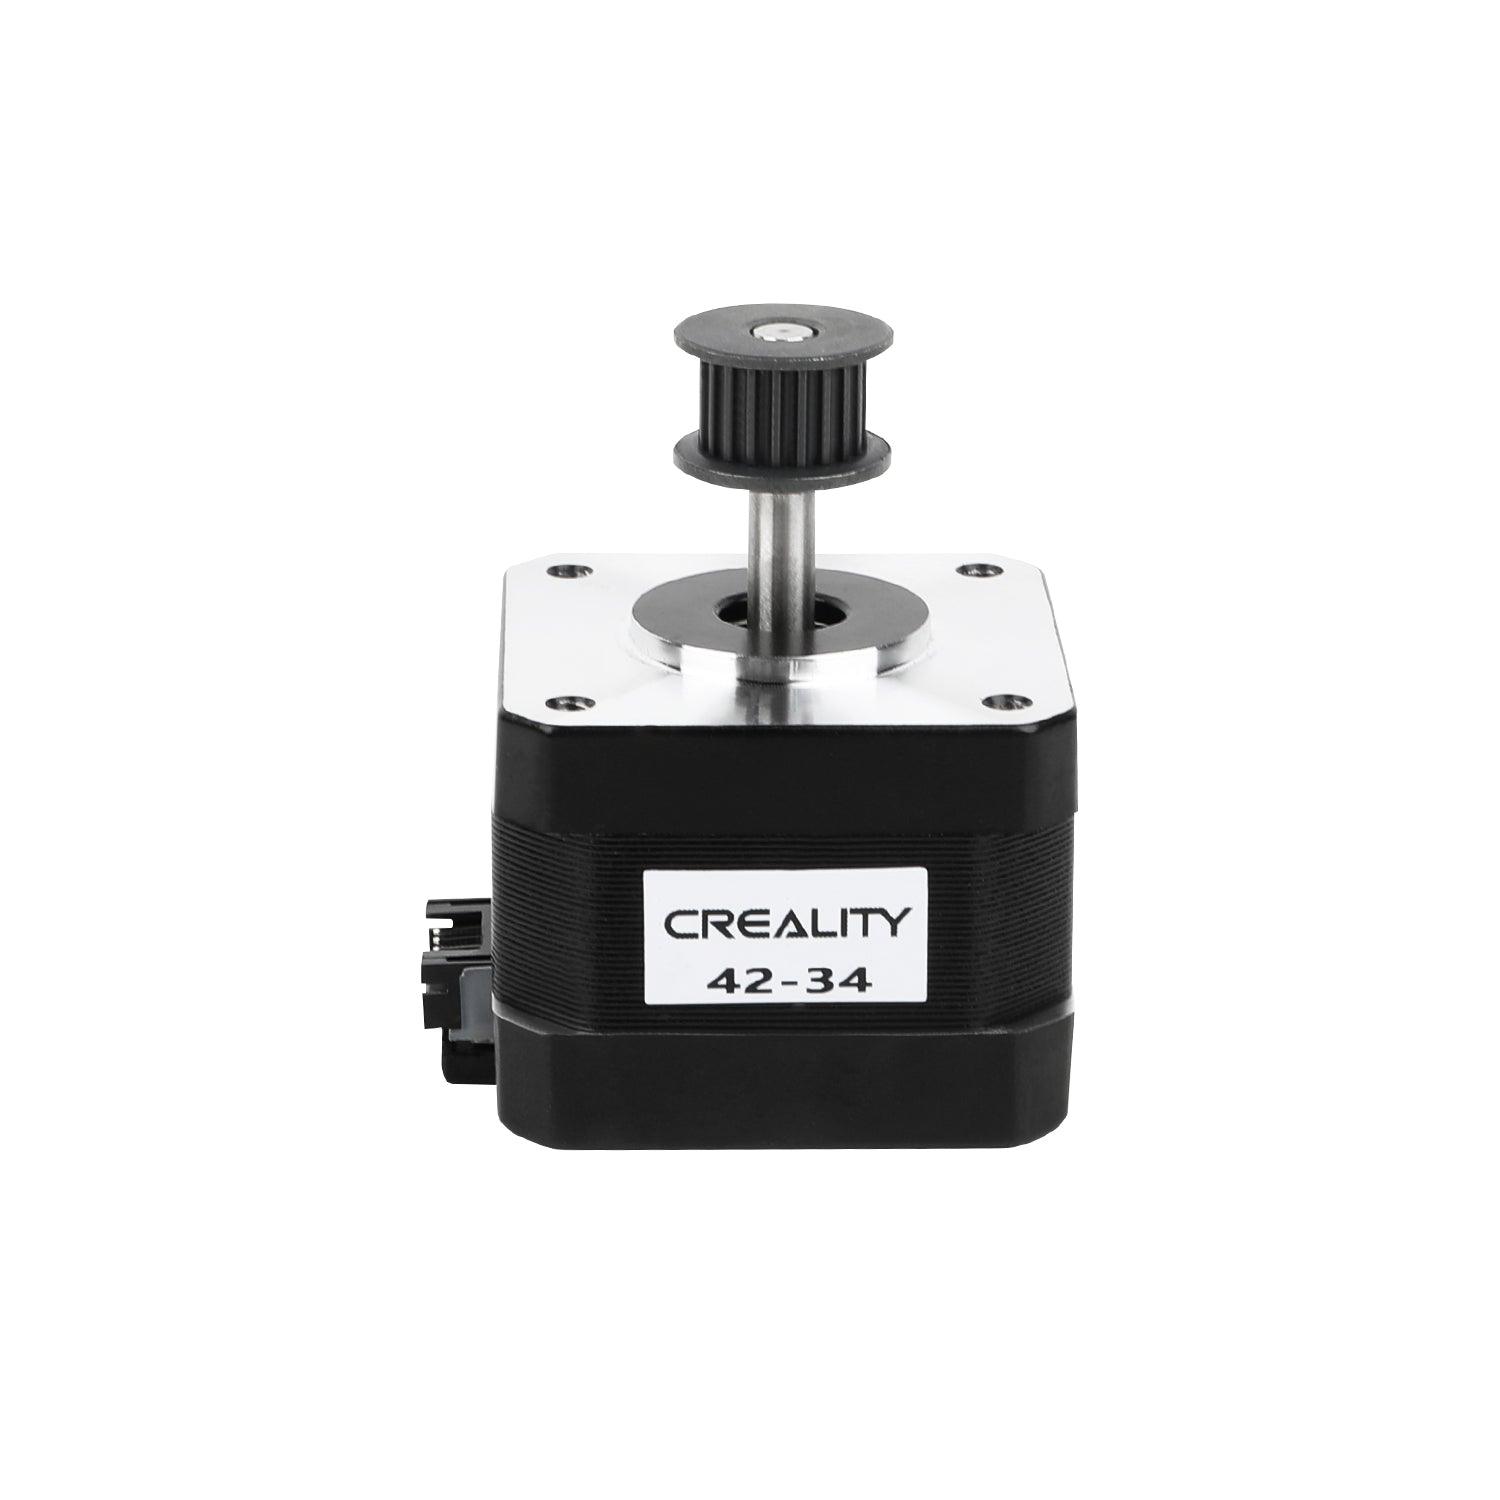 Creality 42-34 Stepper Motor 3204120155 - Antinsky3d